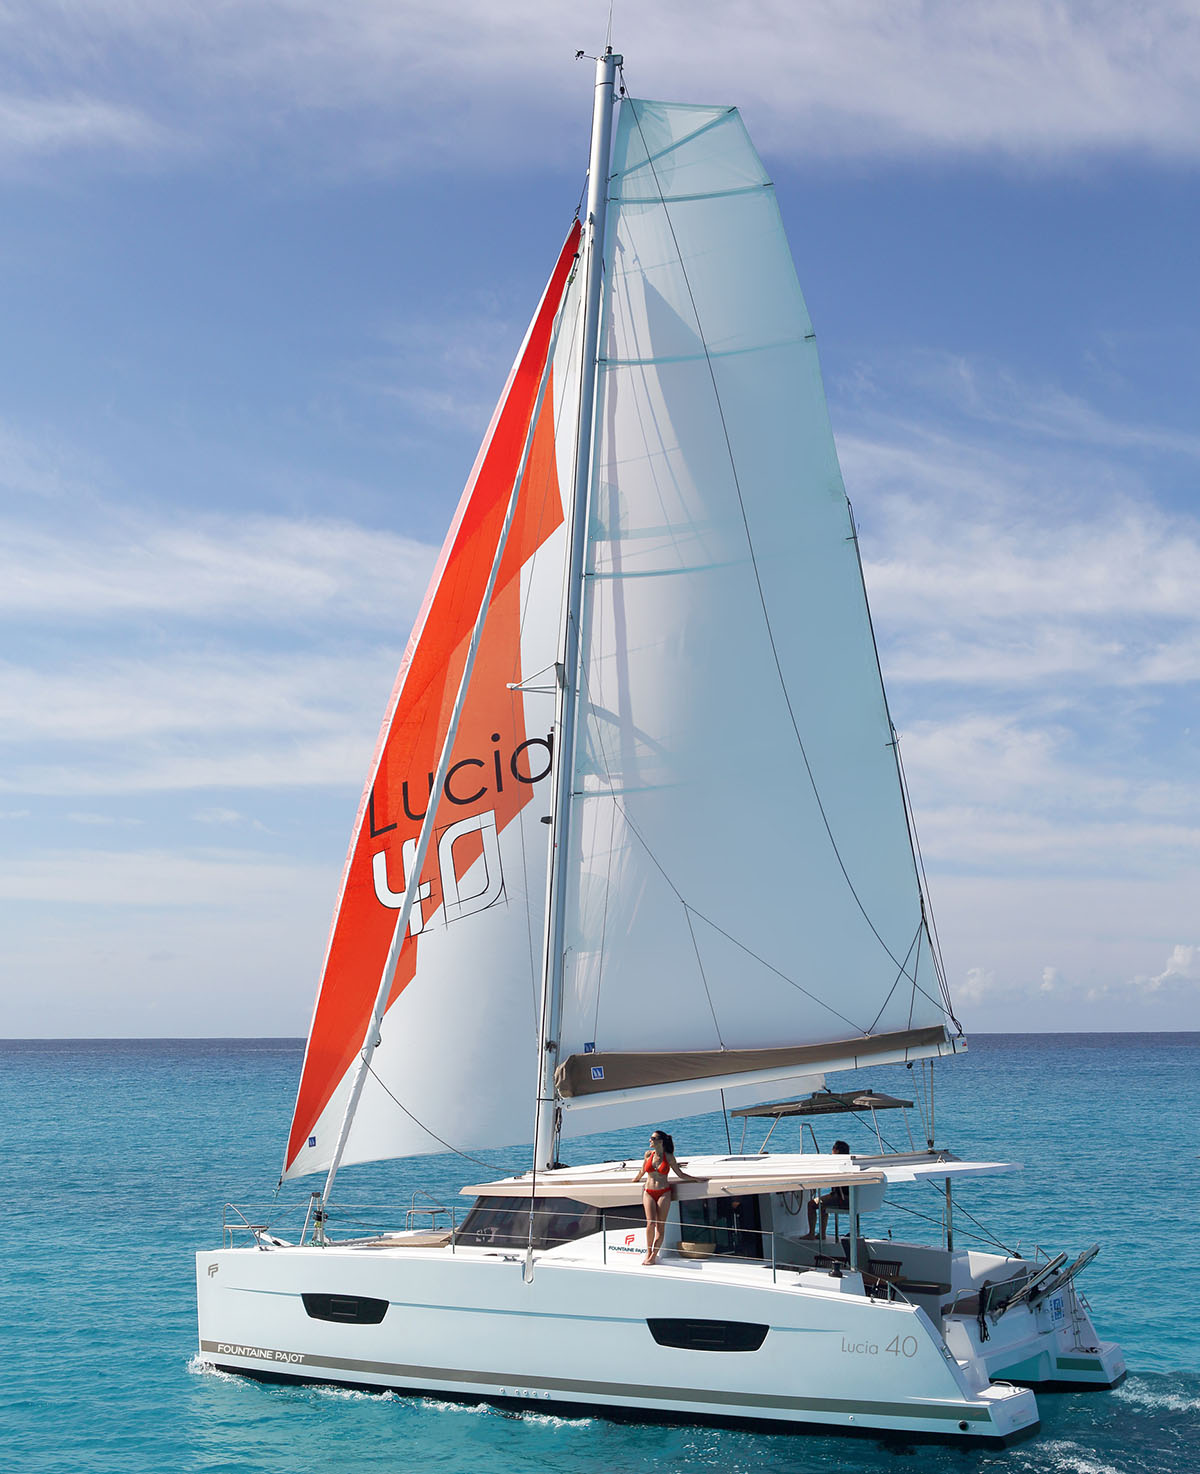 New Sail Catamaran for Sale 2020 LUCIA 40 